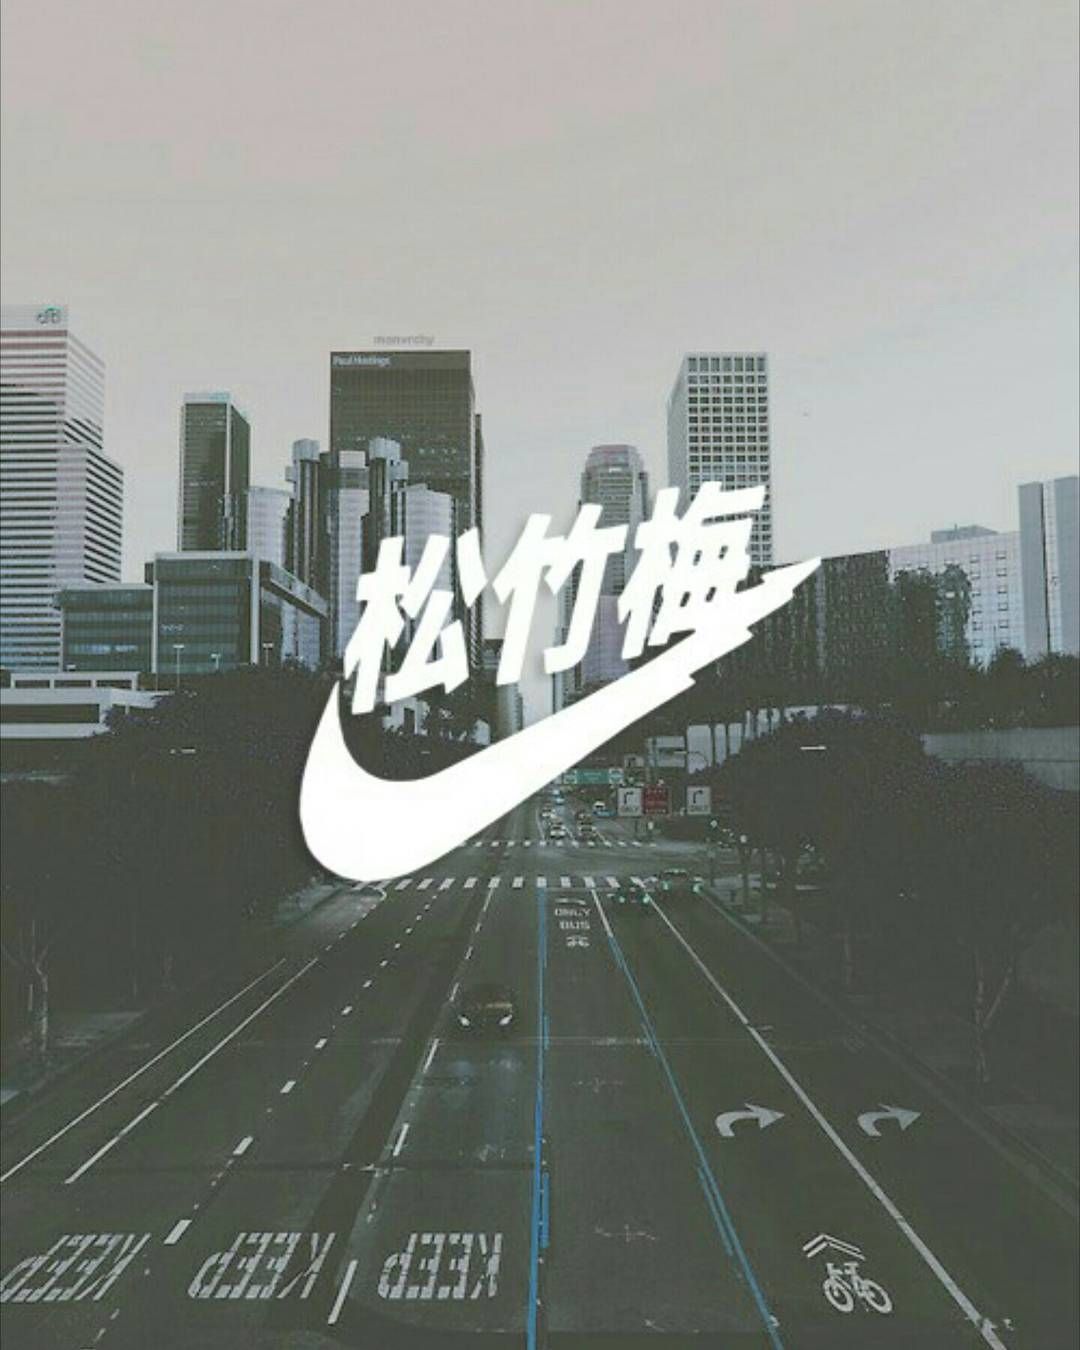 Aesthetic Vaporwave. Vaporwave wallpaper, Nike logo wallpaper